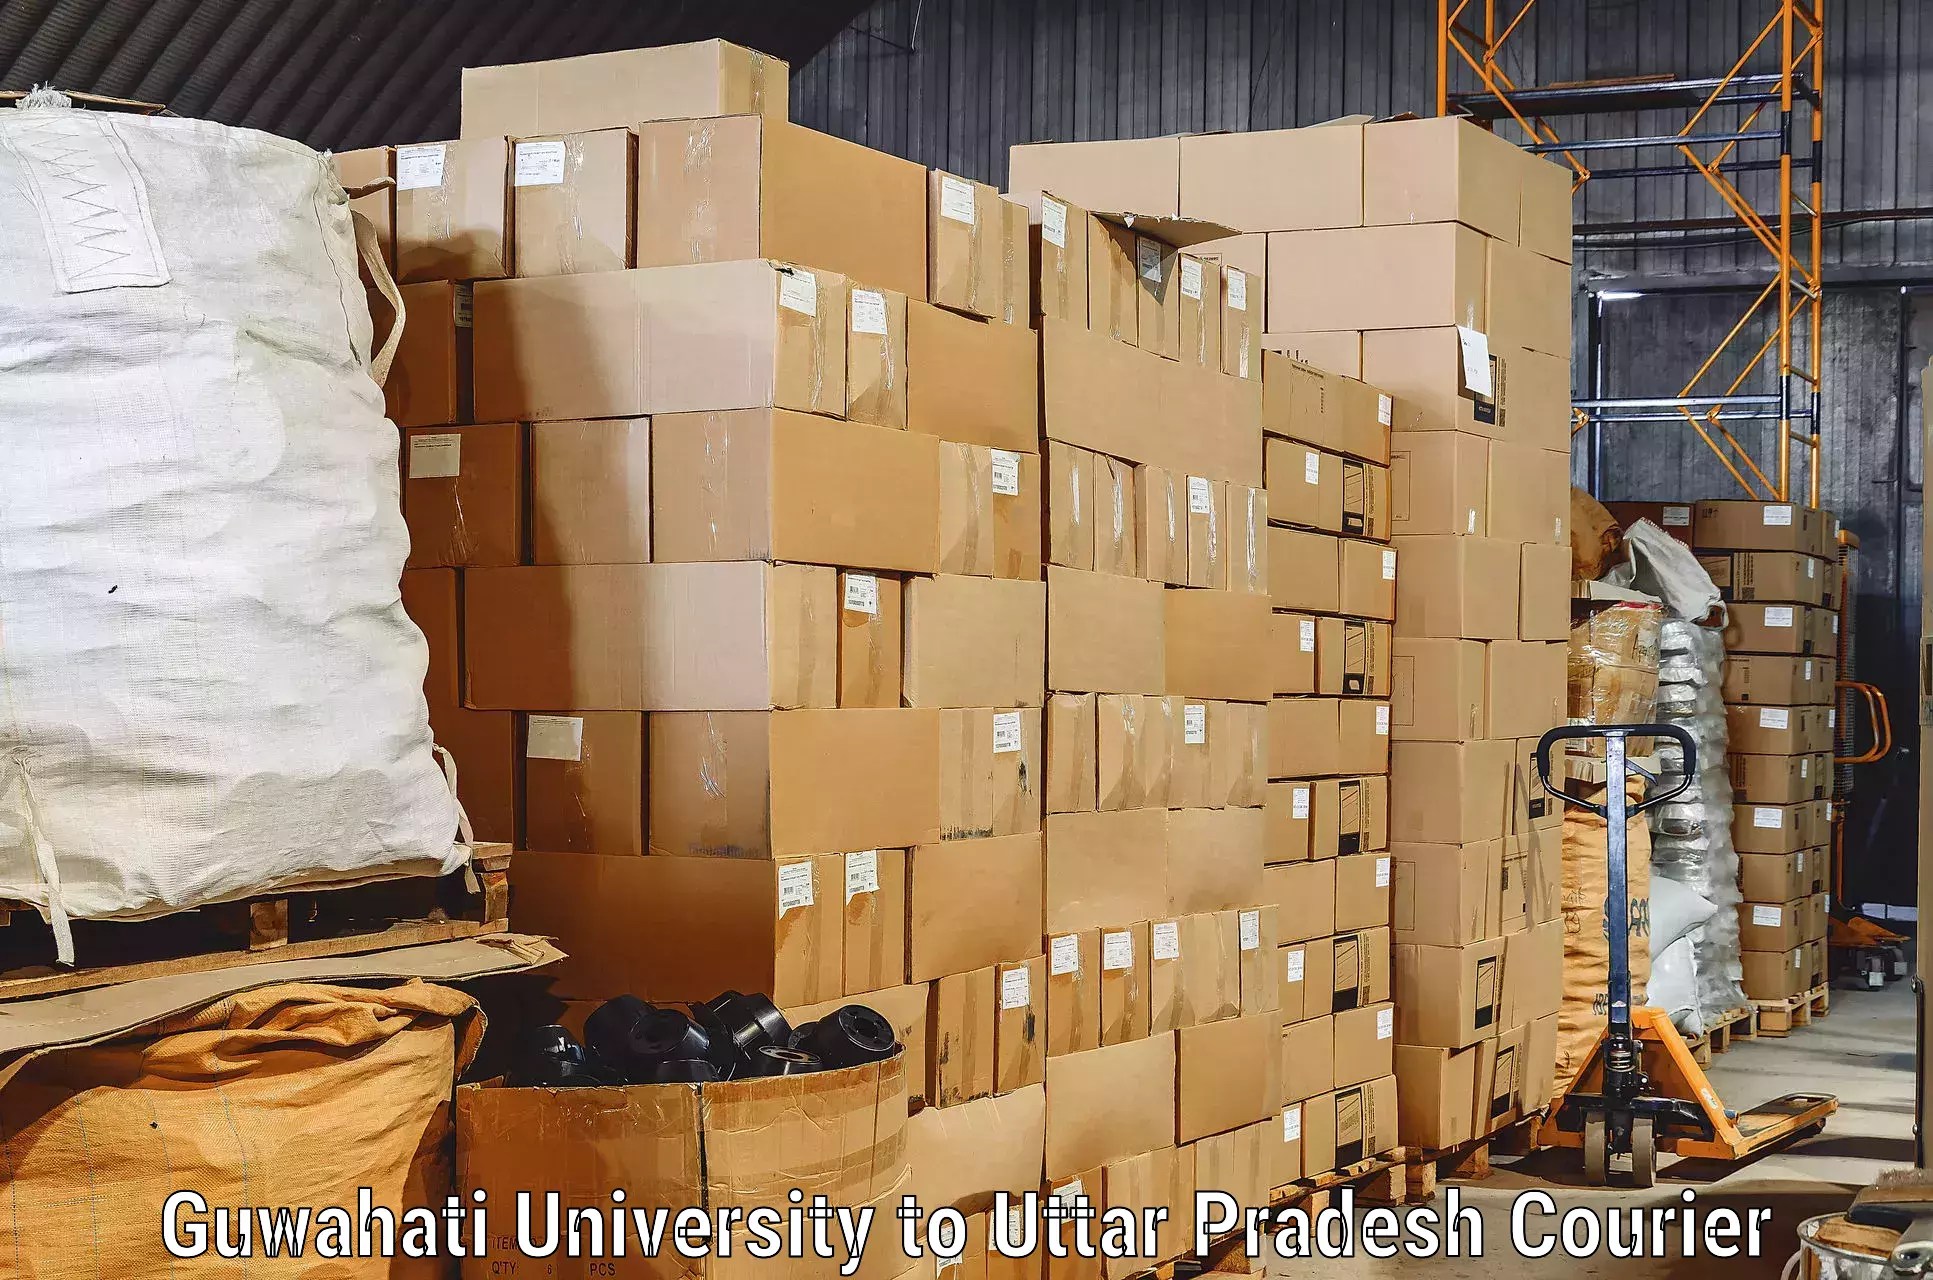 Trusted moving company Guwahati University to Mishrikh